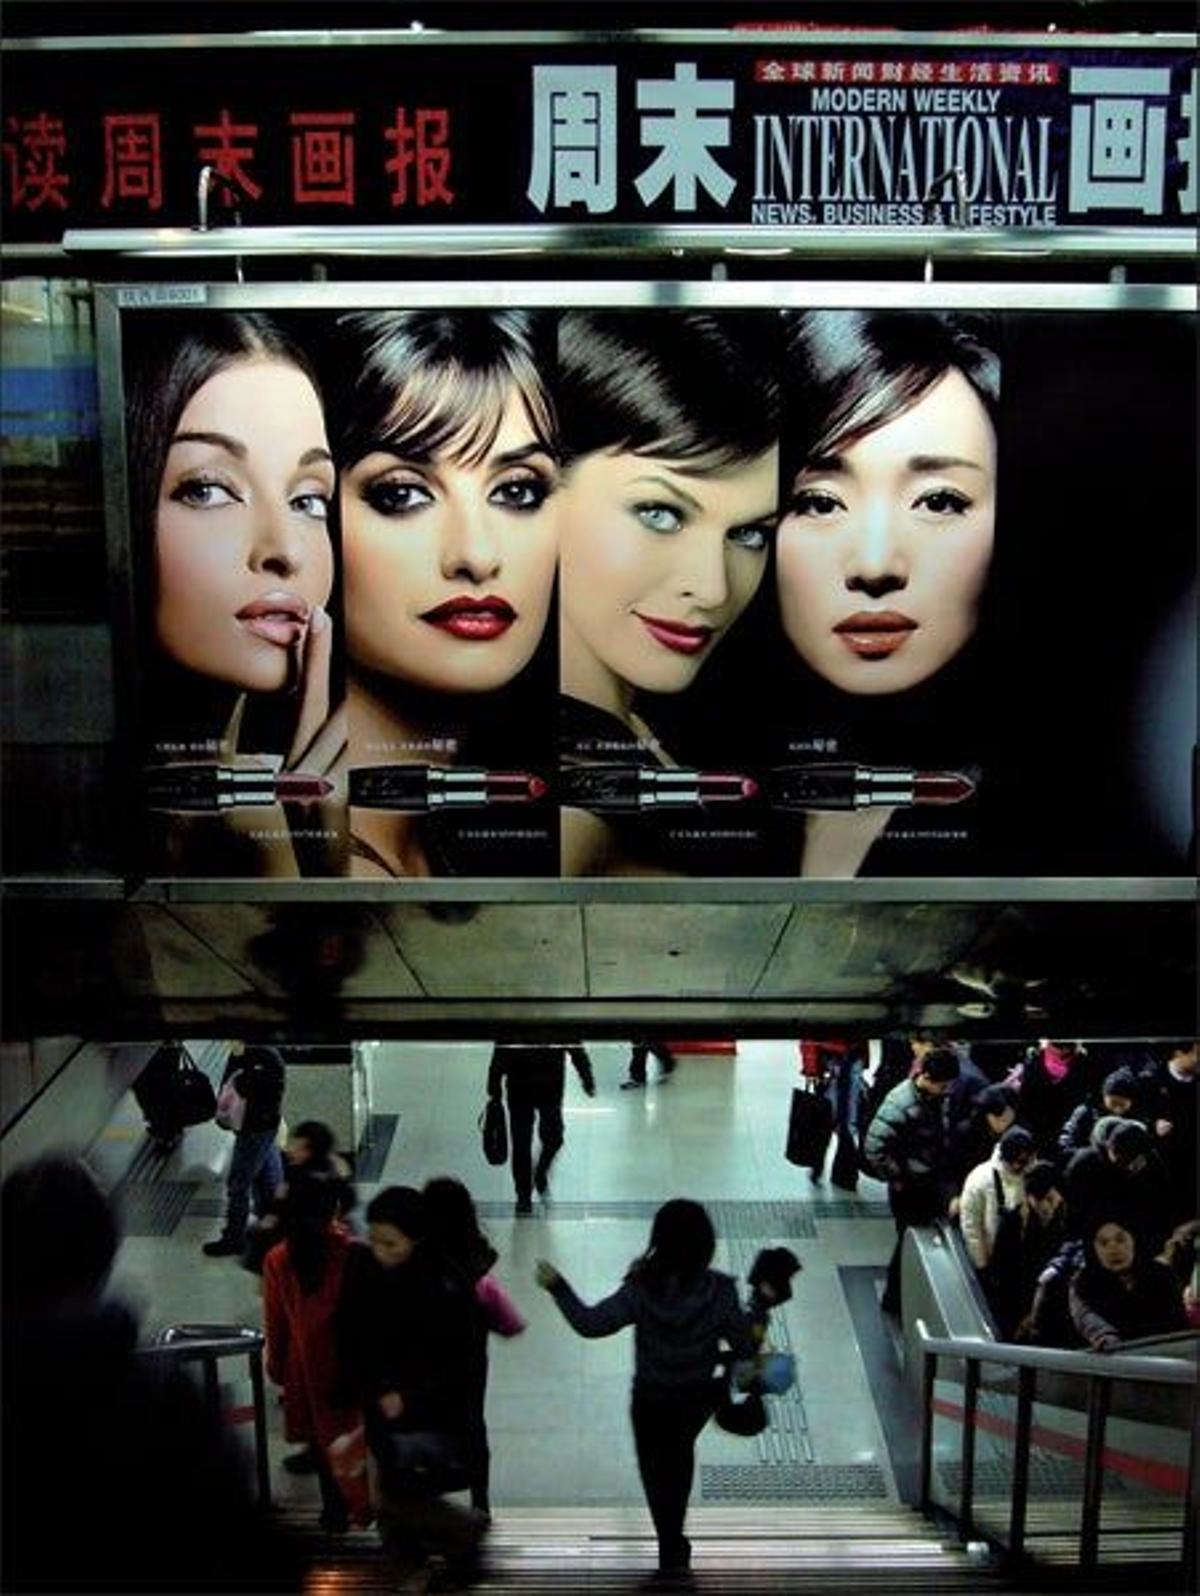 Penélope Cruz y
Linda Evangelista
comparten un cartel
publicitario del
Metro de Shanghai,
la ciudad